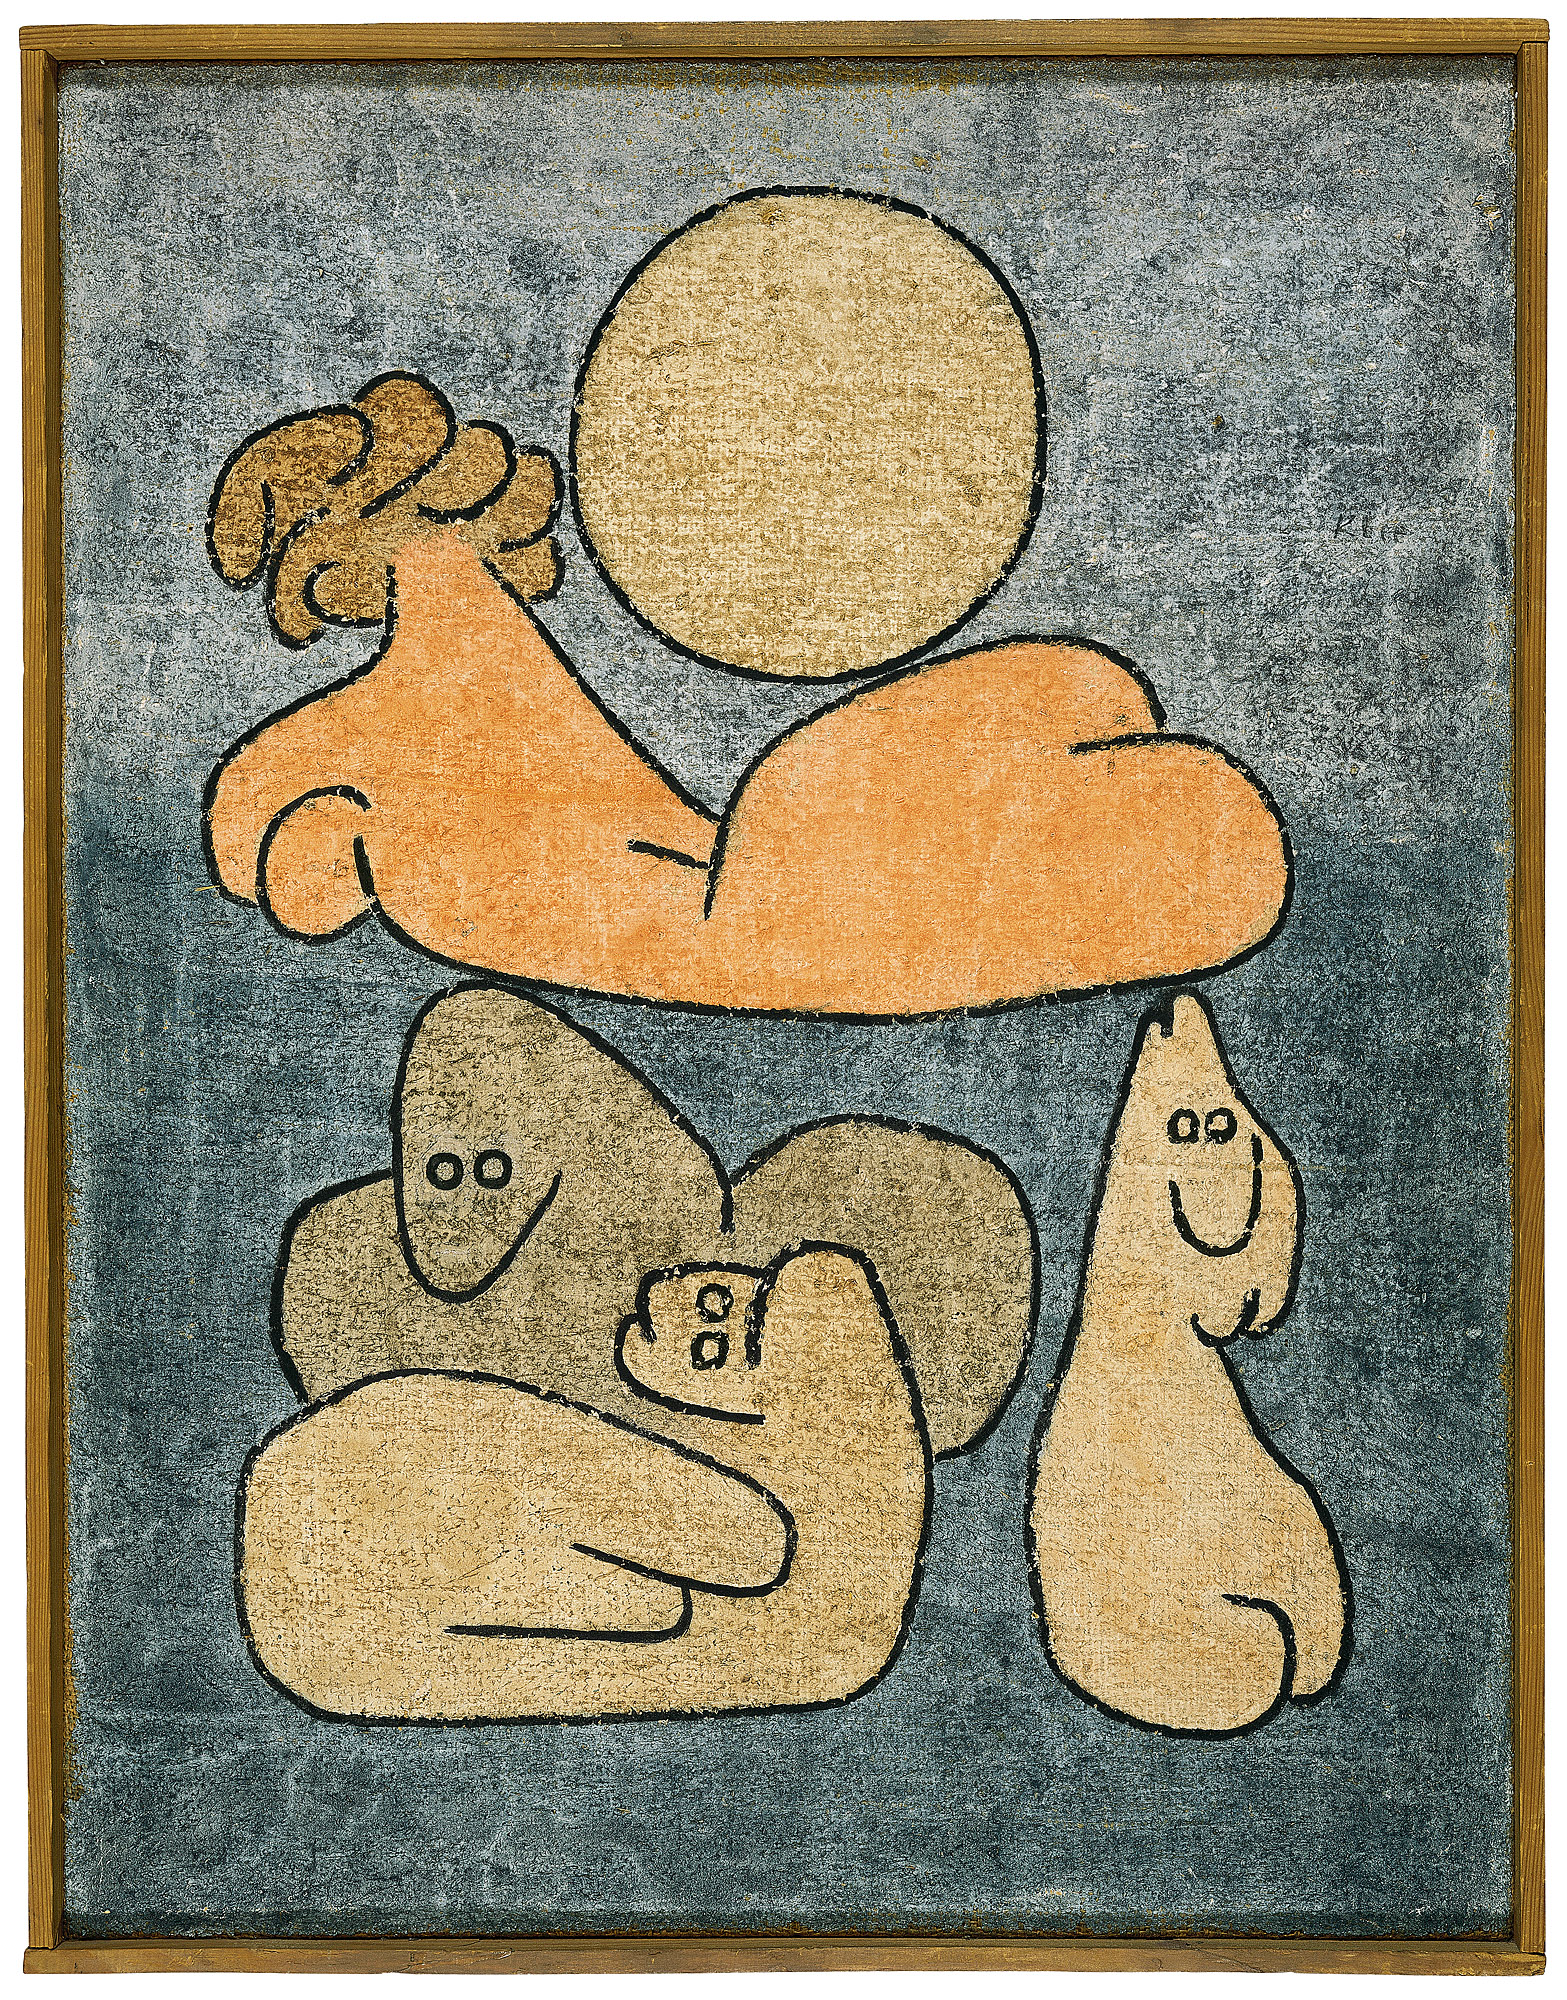 Il Torso ed i suoi con la luna piena by Paul Klee - 1939 Zentrum Paul Klee